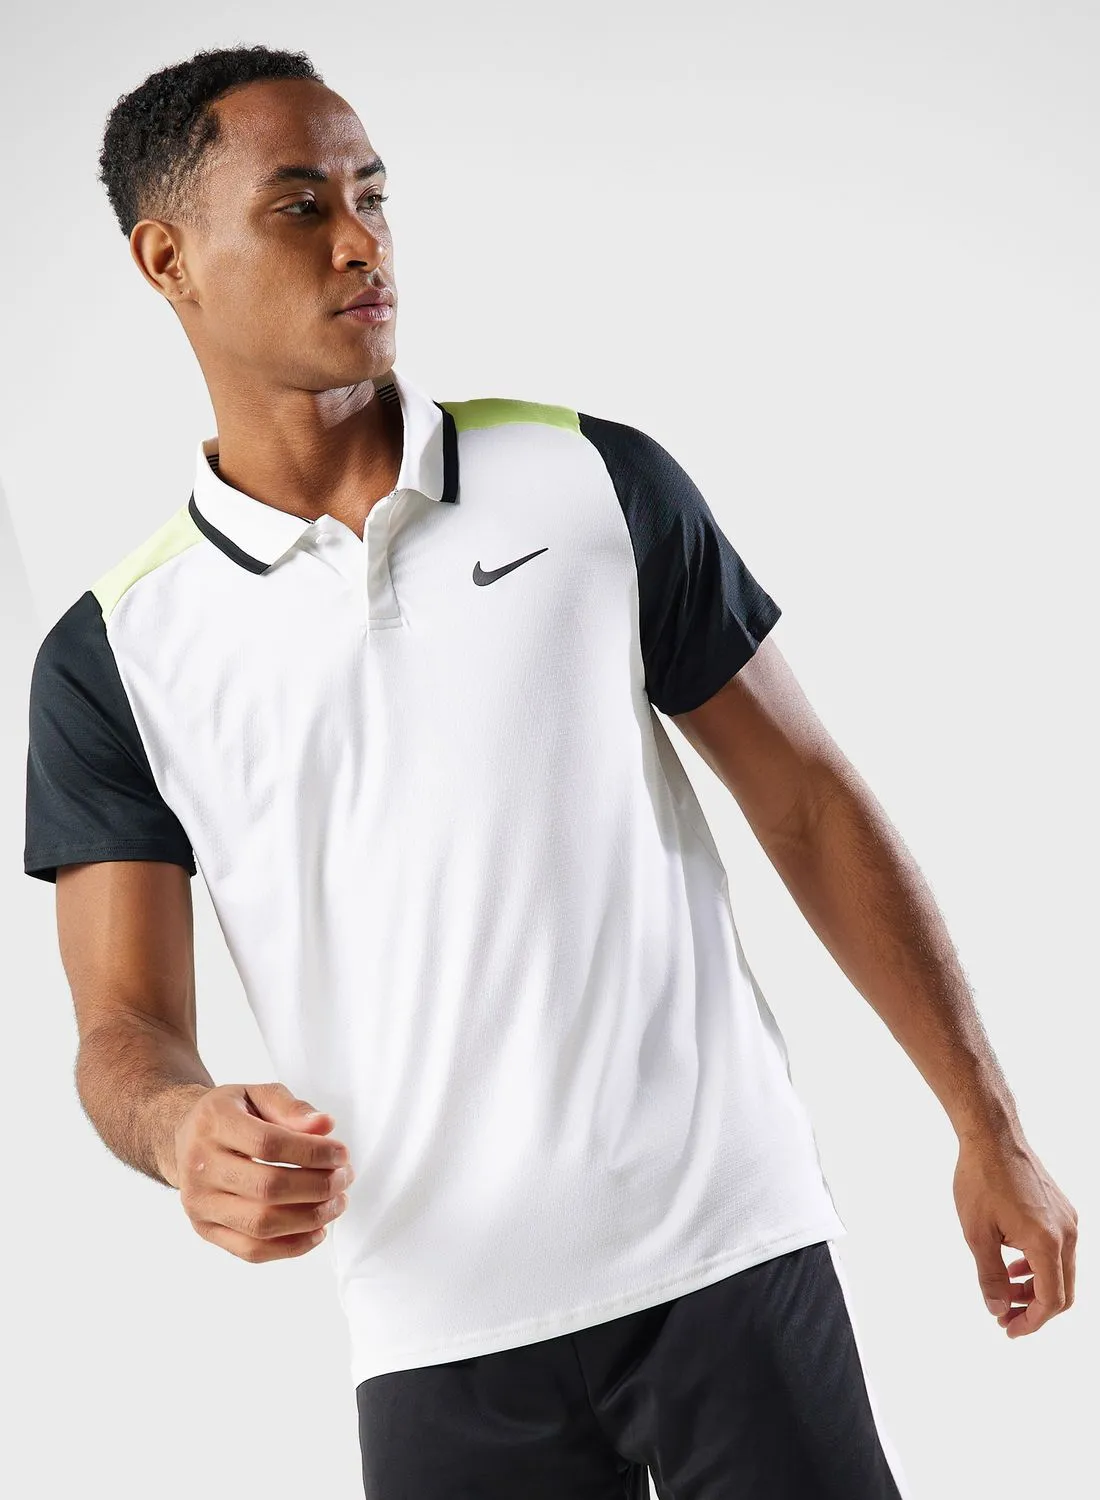 Nike Dri-Fit Advantage Polo Shirt